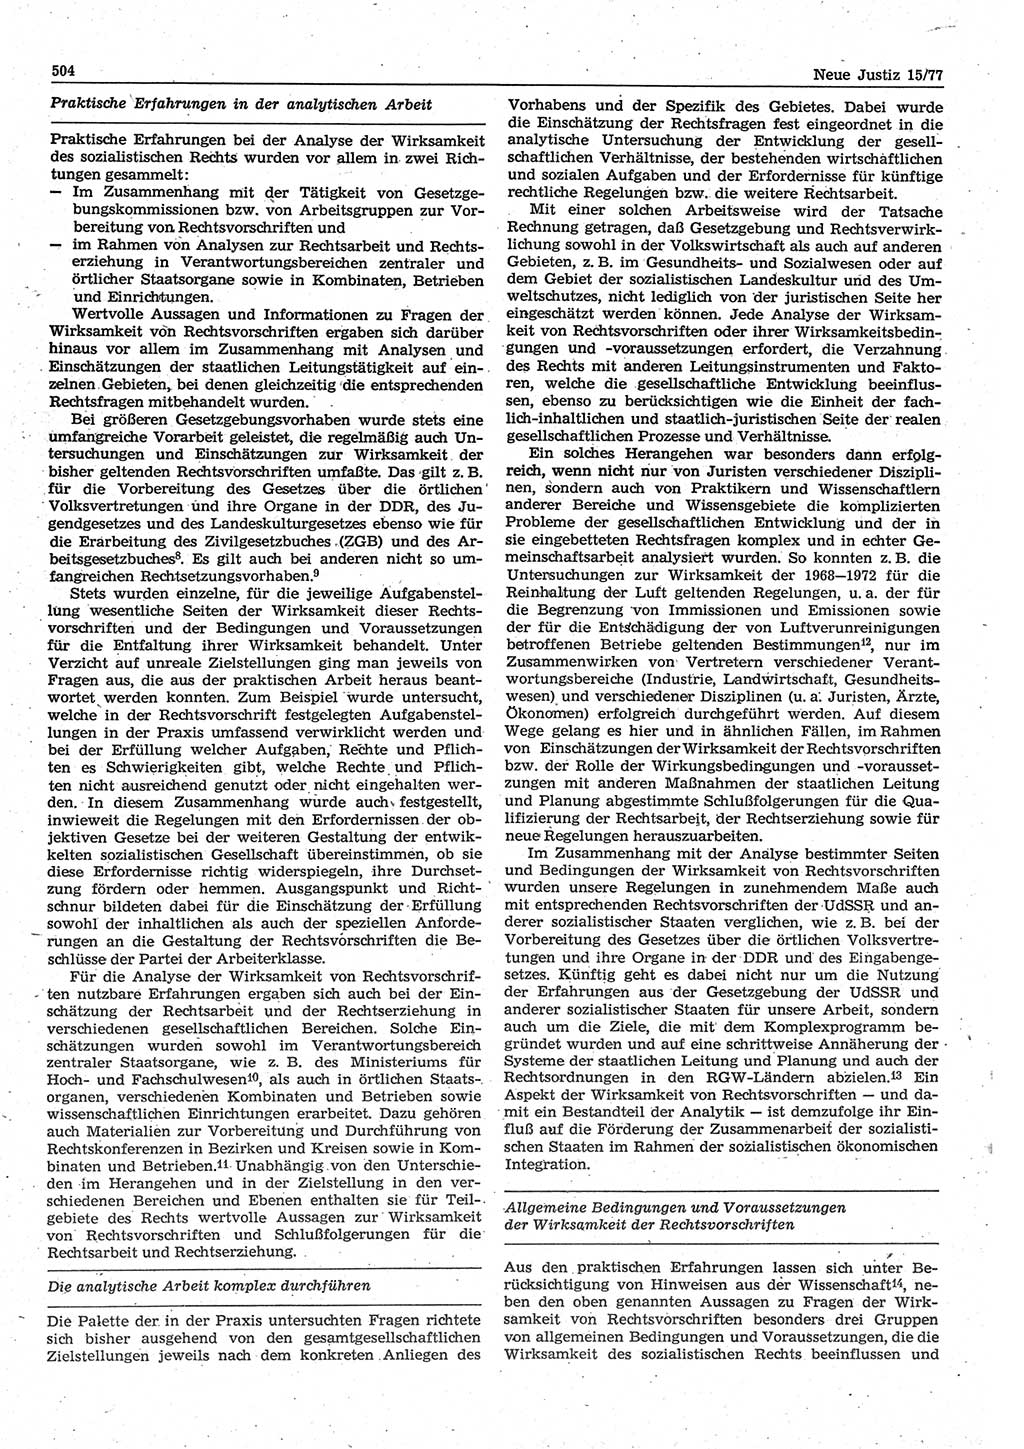 Neue Justiz (NJ), Zeitschrift für Recht und Rechtswissenschaft-Zeitschrift, sozialistisches Recht und Gesetzlichkeit, 31. Jahrgang 1977, Seite 504 (NJ DDR 1977, S. 504)